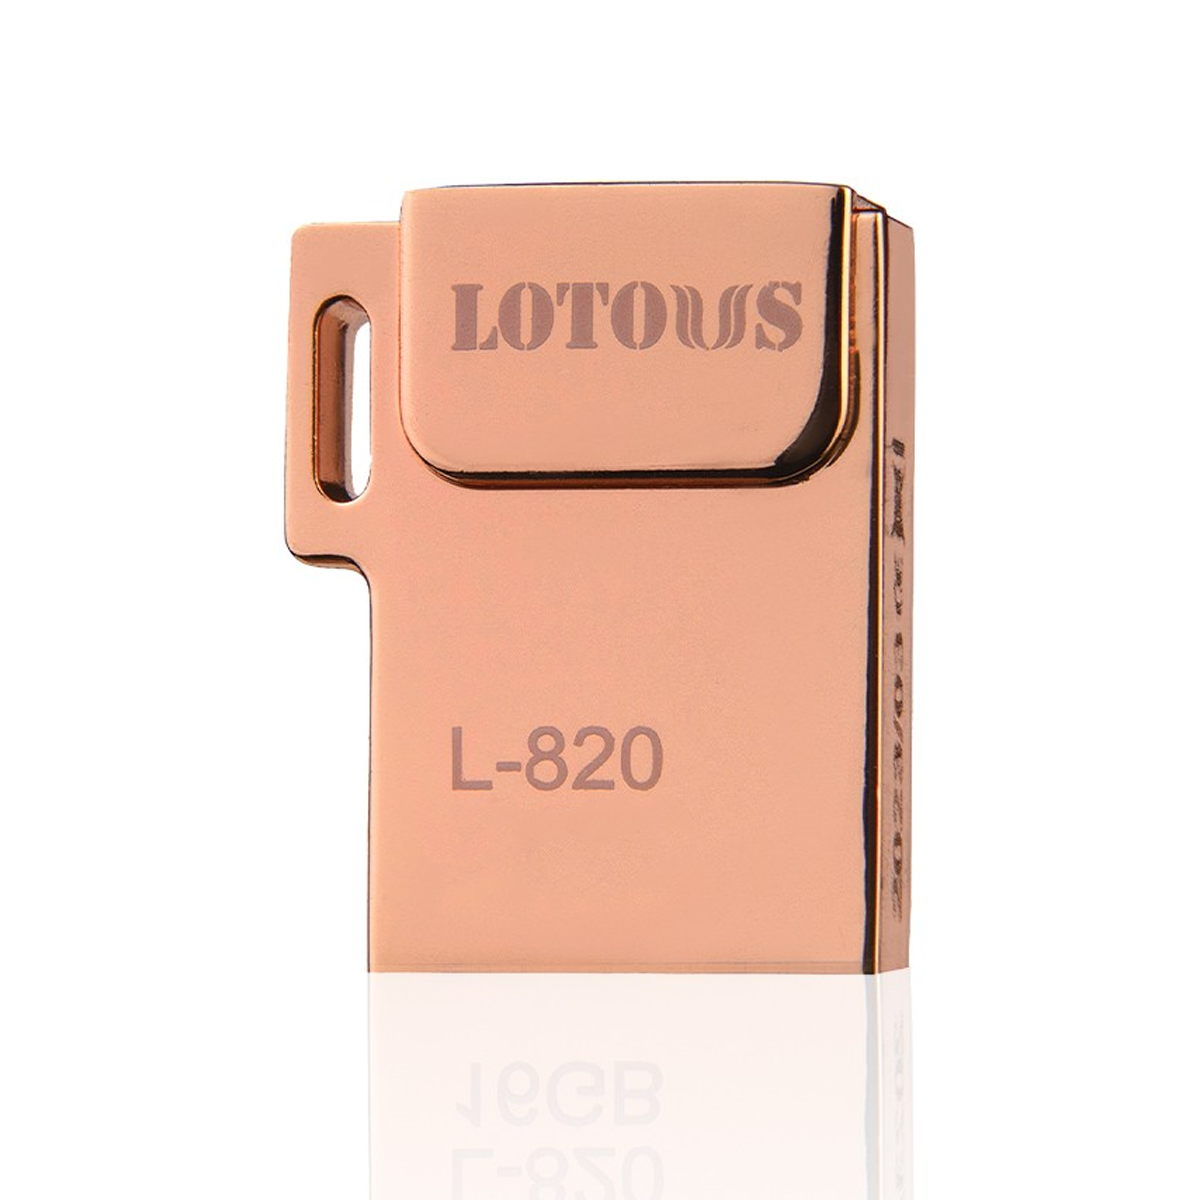 فلش مموری لوتوس مدل L-820 ظرفیت 64 گیگابایت